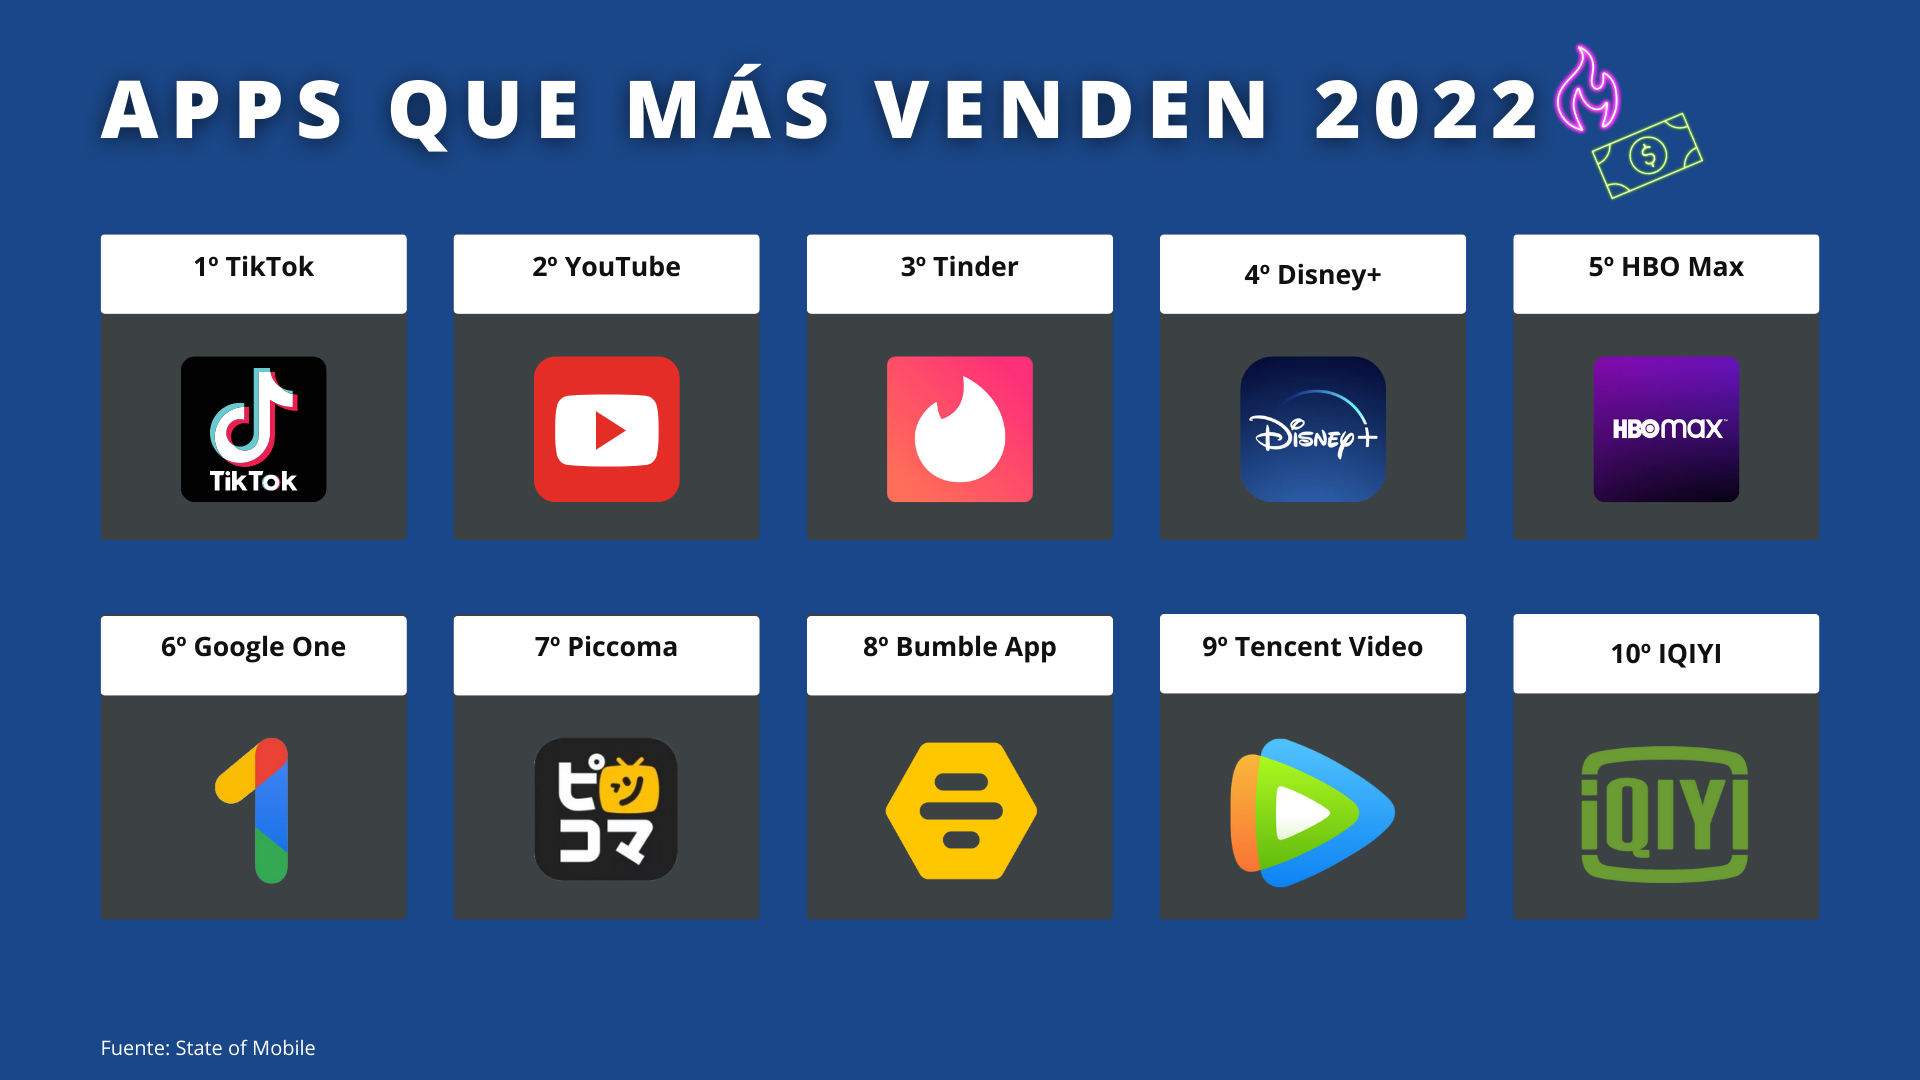 Aplicaciones que más han vendido en 2022: TikTok, YouTube, Tinder, Disney+, HBO Max, Google One, Piccoma, Bumble App, Tencent Video e IQIYI